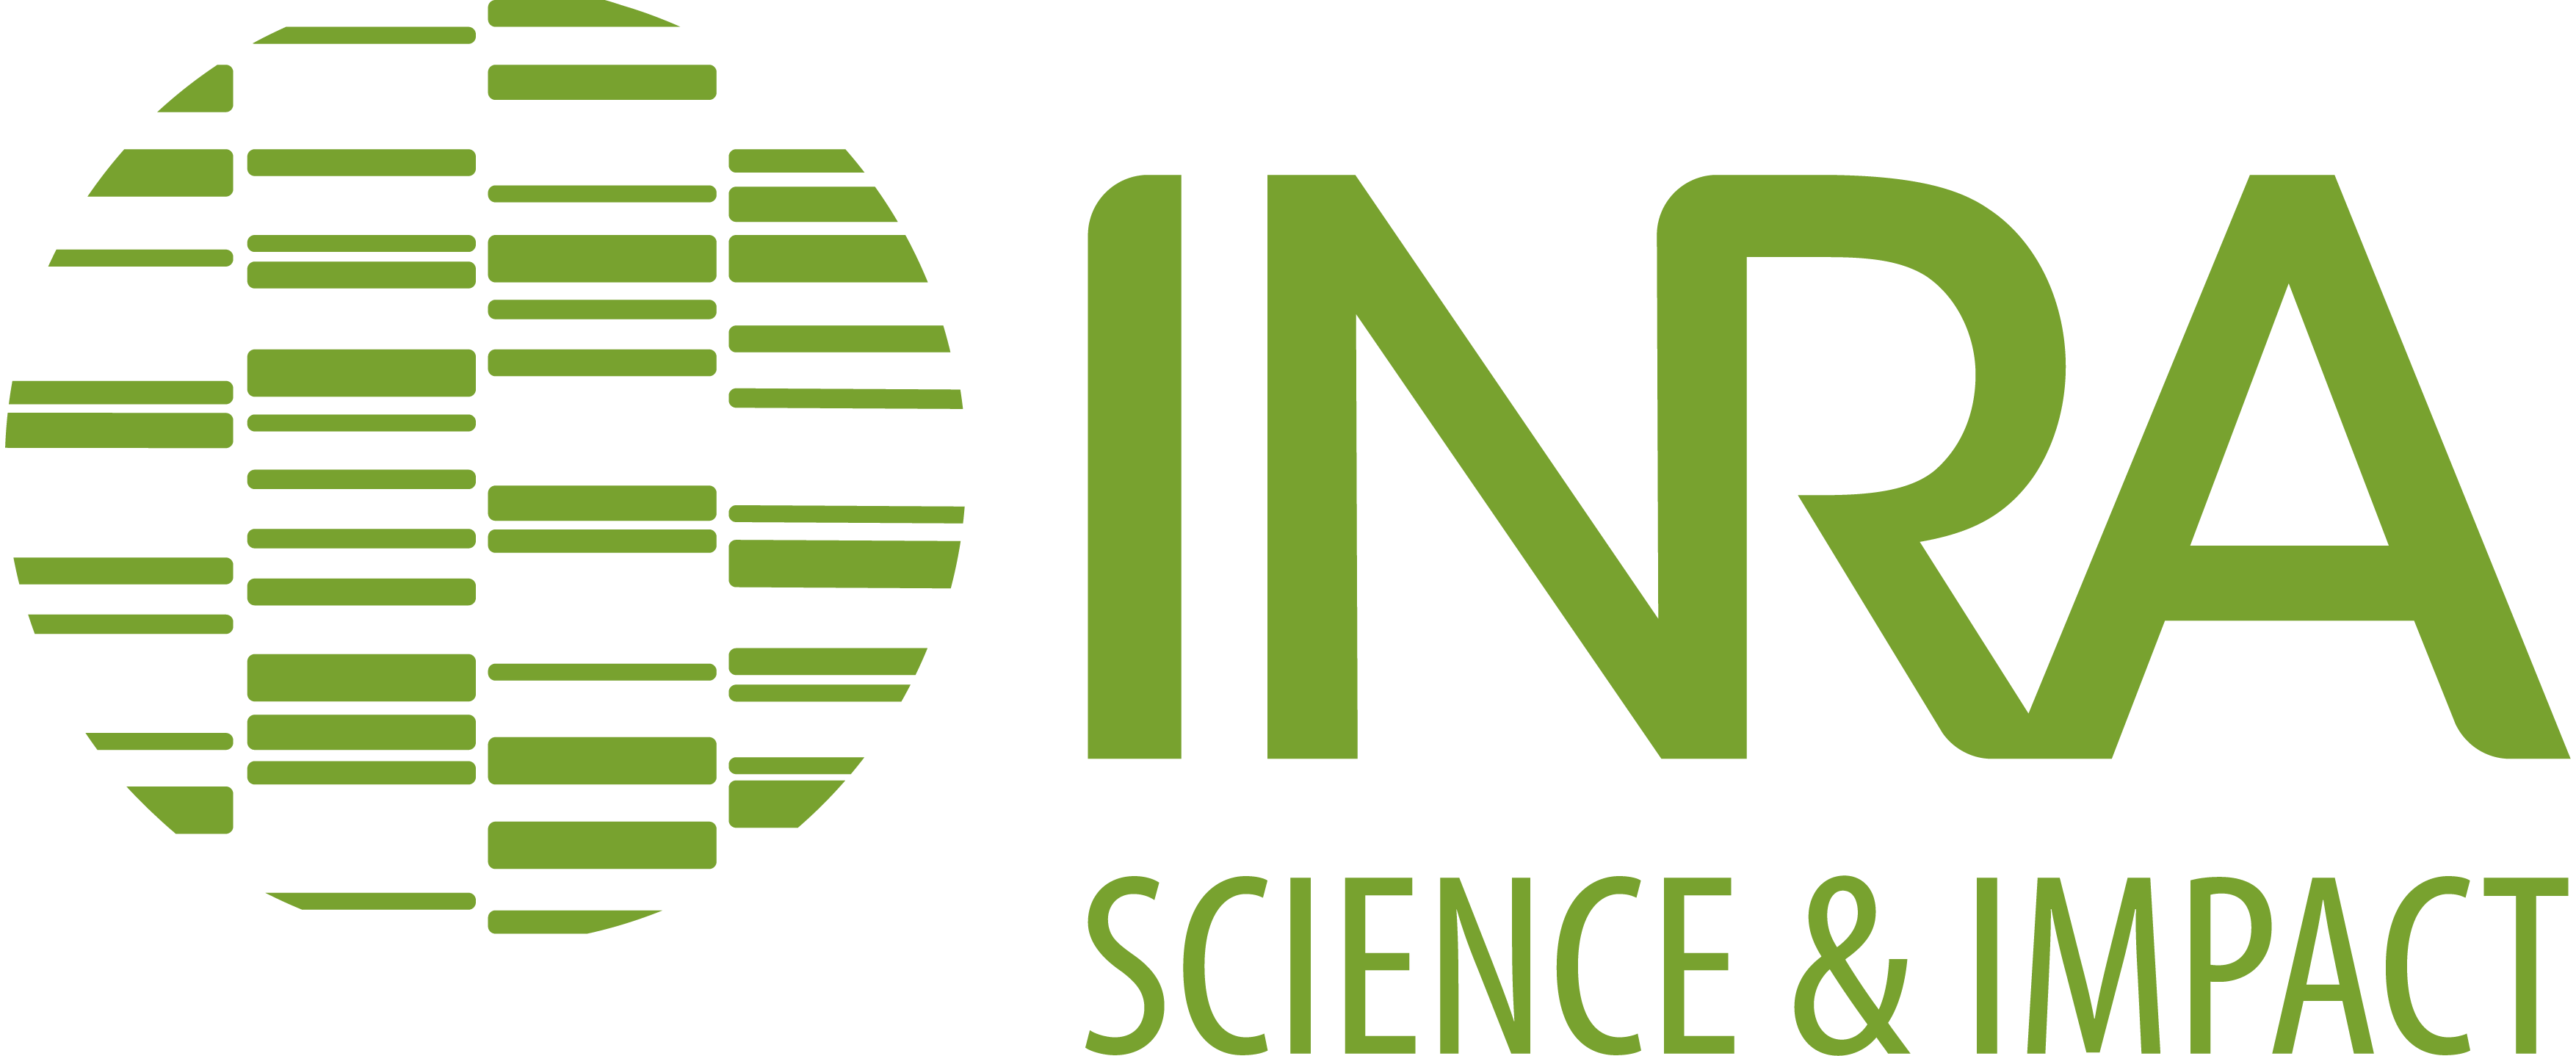 Logo INRA